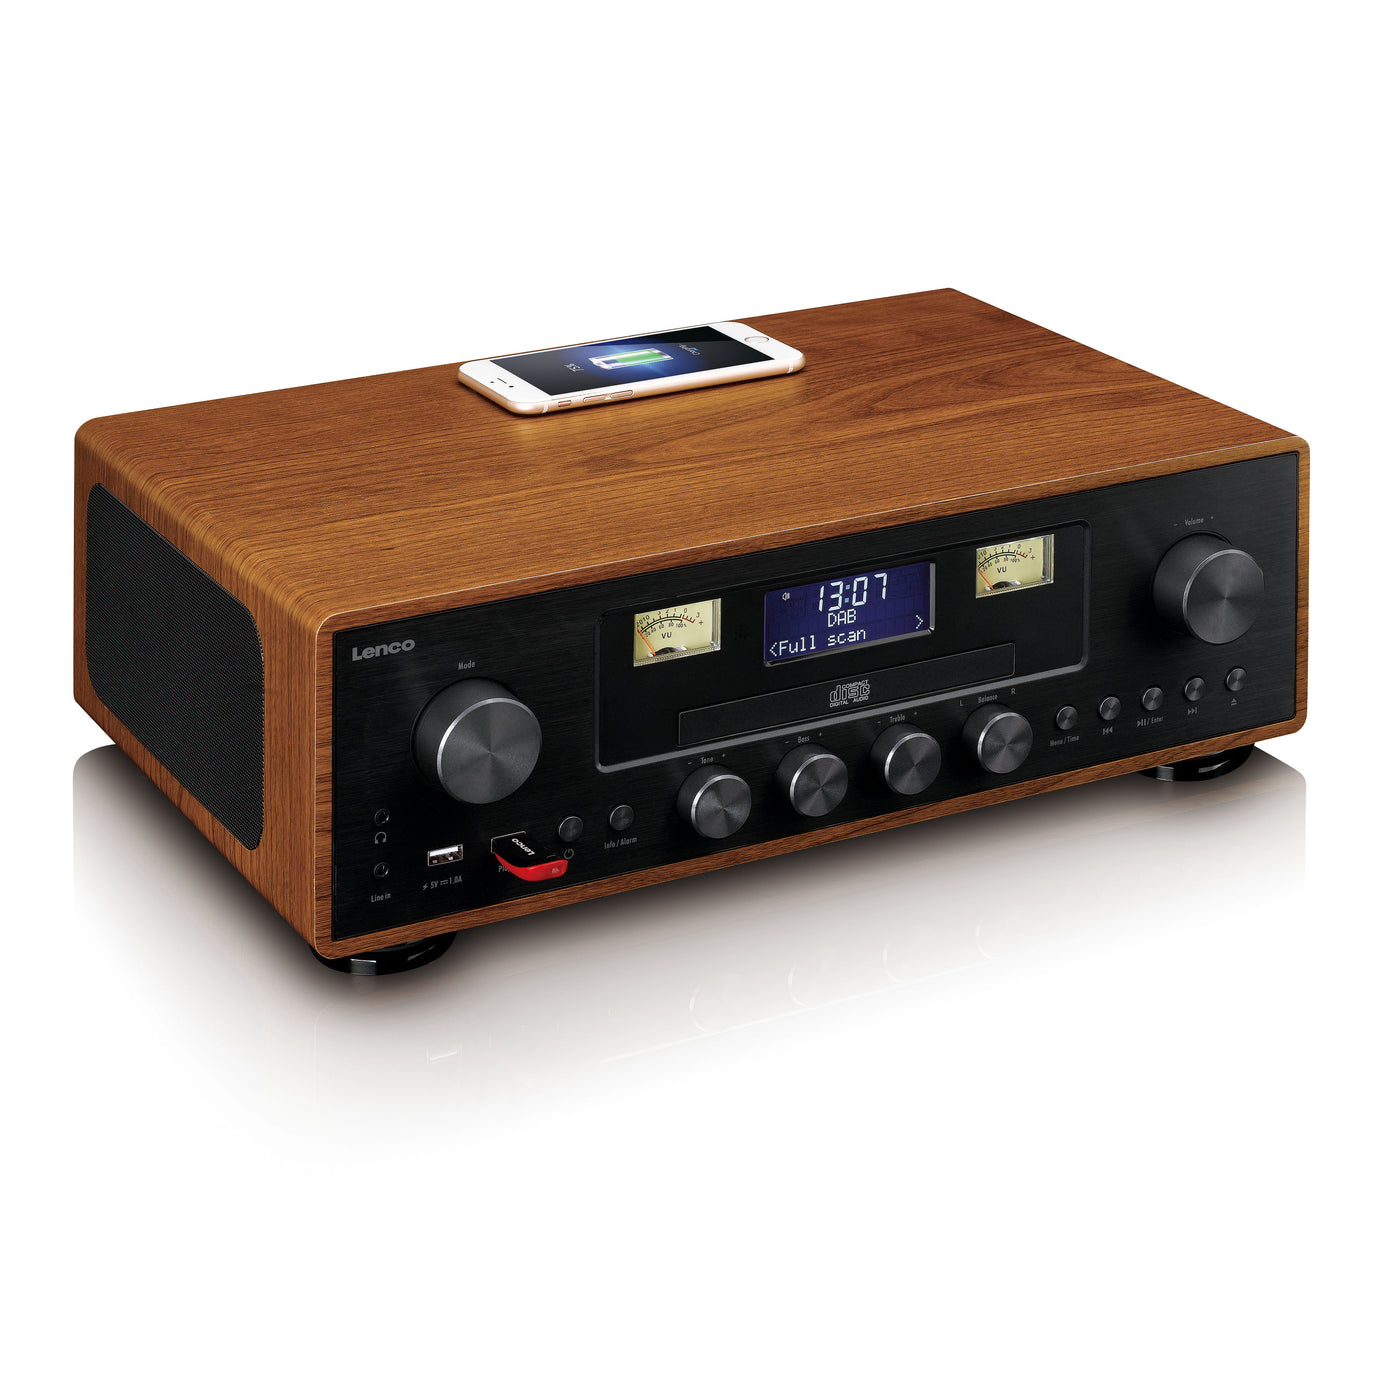 LENCO DAR-081WD - DAB+/FM radio with CD player, USB, Bluetooth and wir –  Lenco-Catalog | Digitalradios (DAB+)